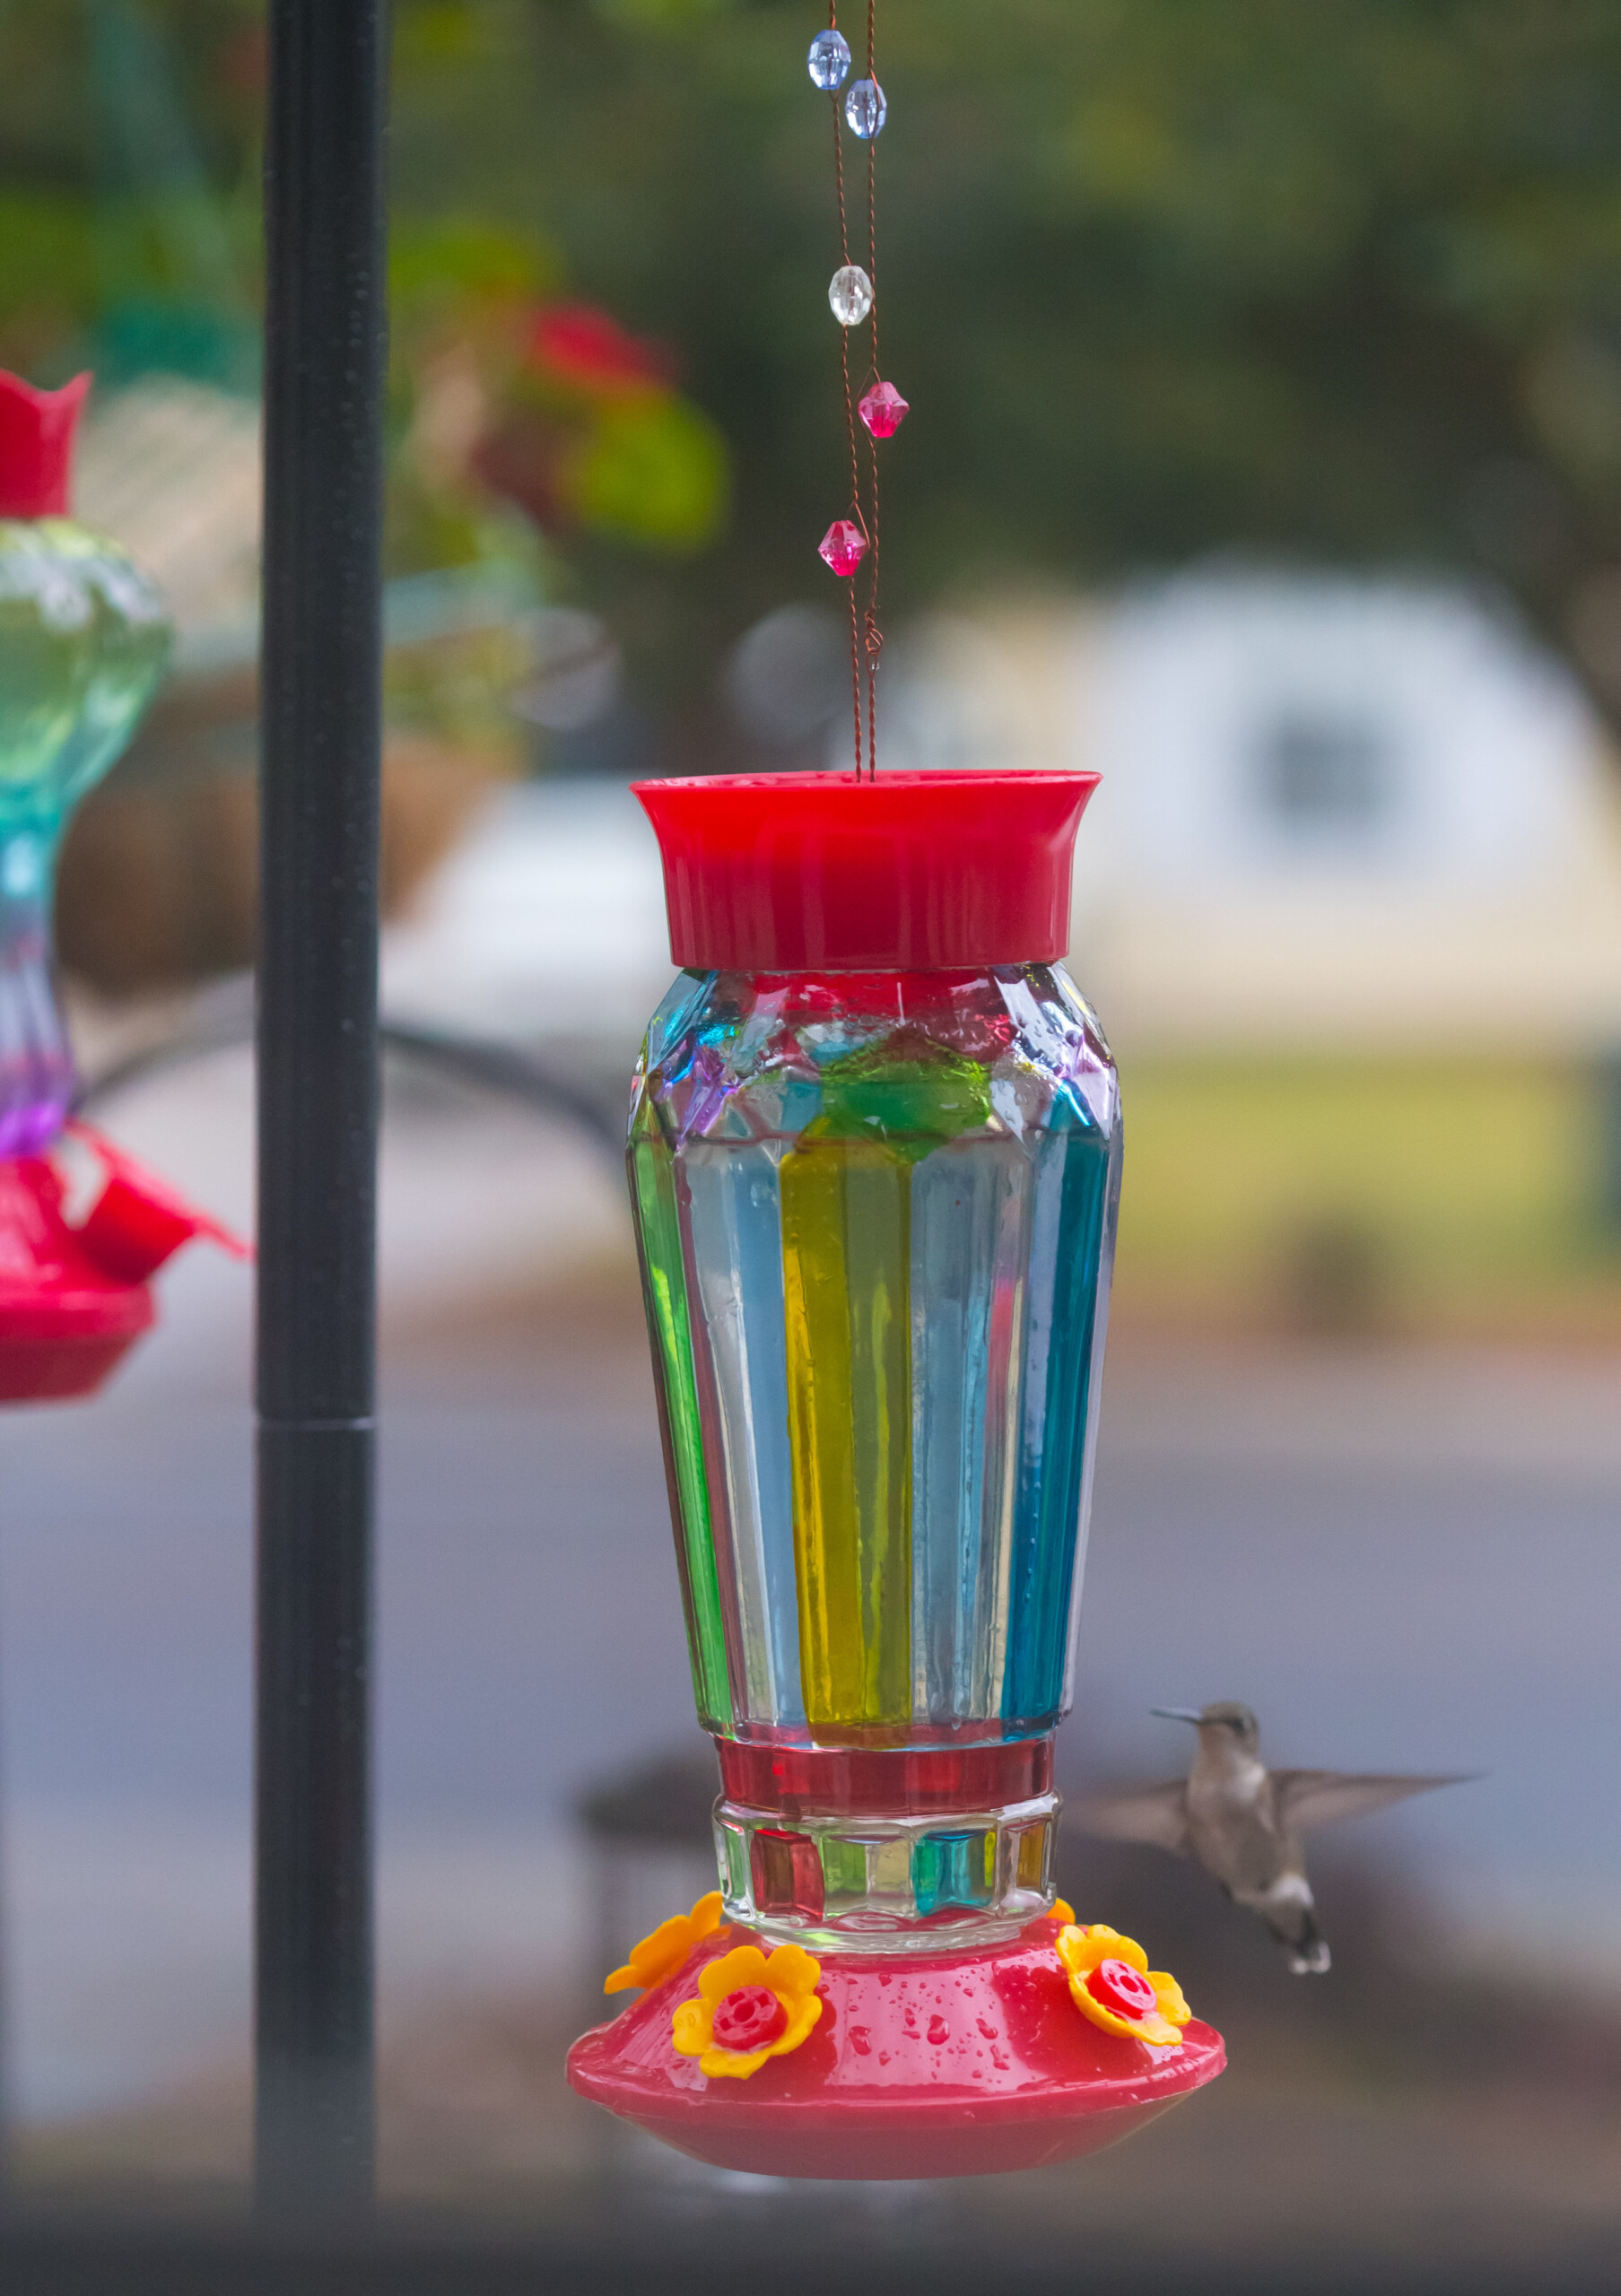 homemade hummingbird nectar recipes